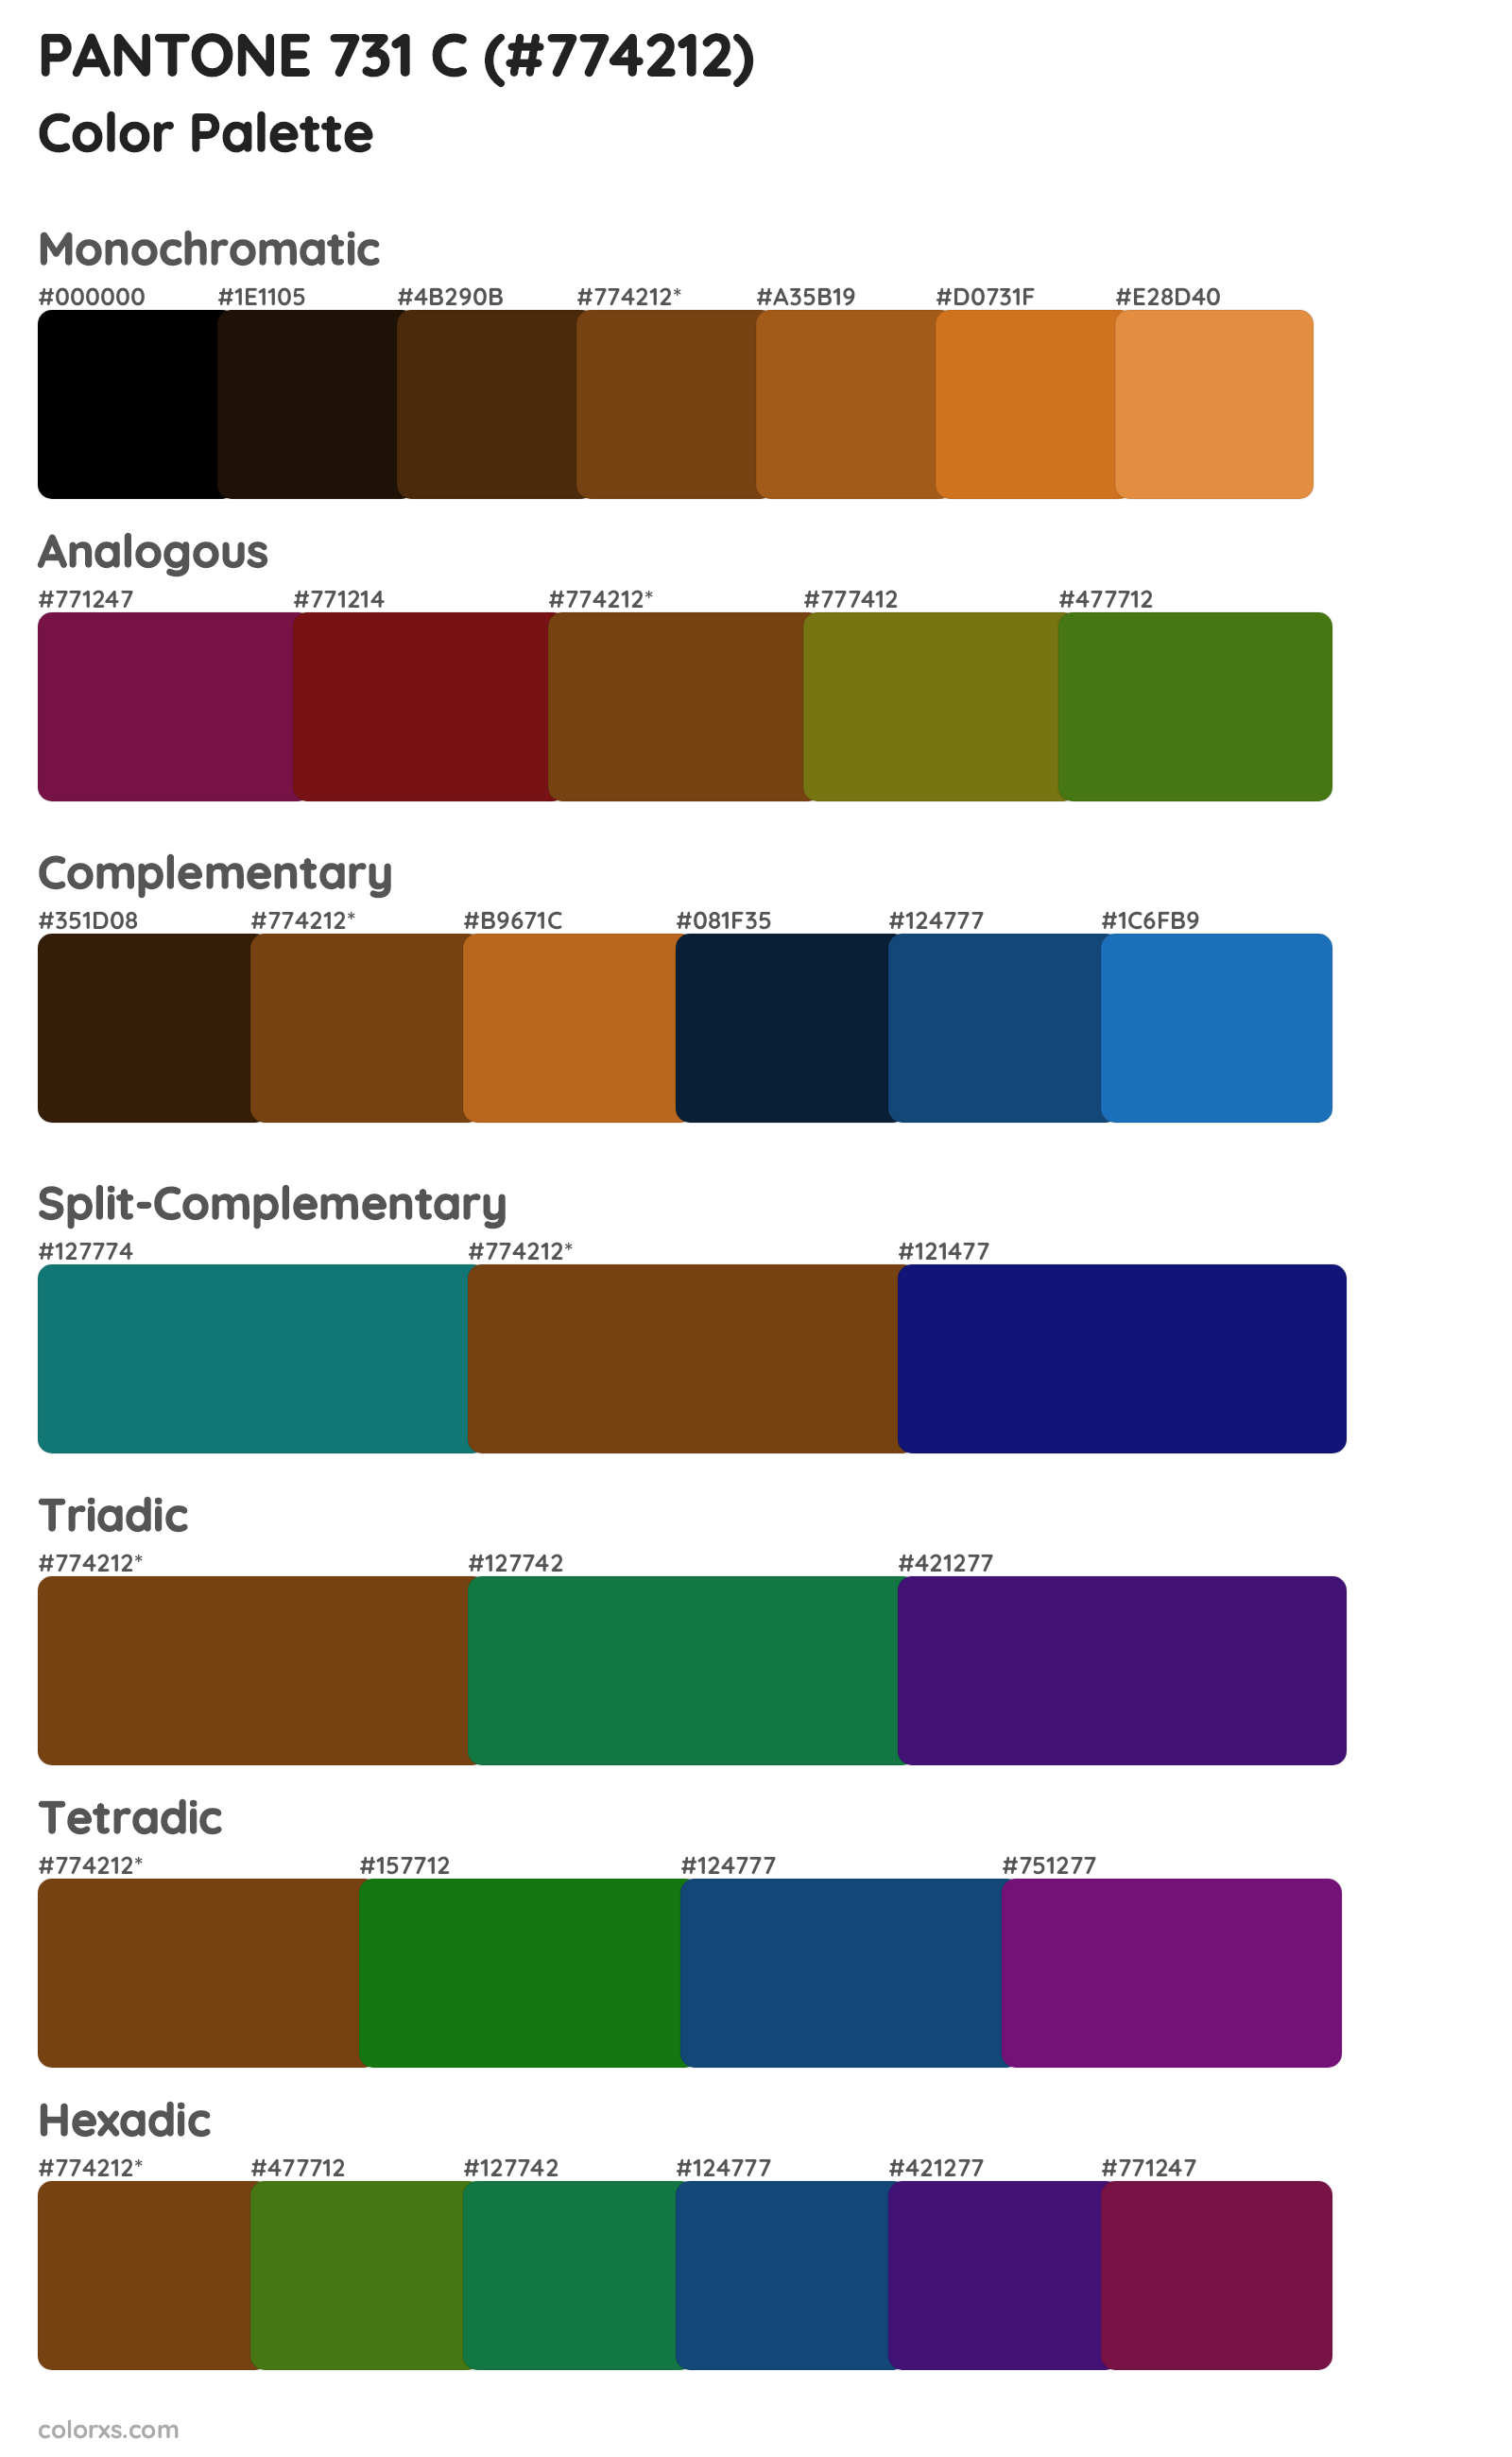 PANTONE 731 C Color Scheme Palettes